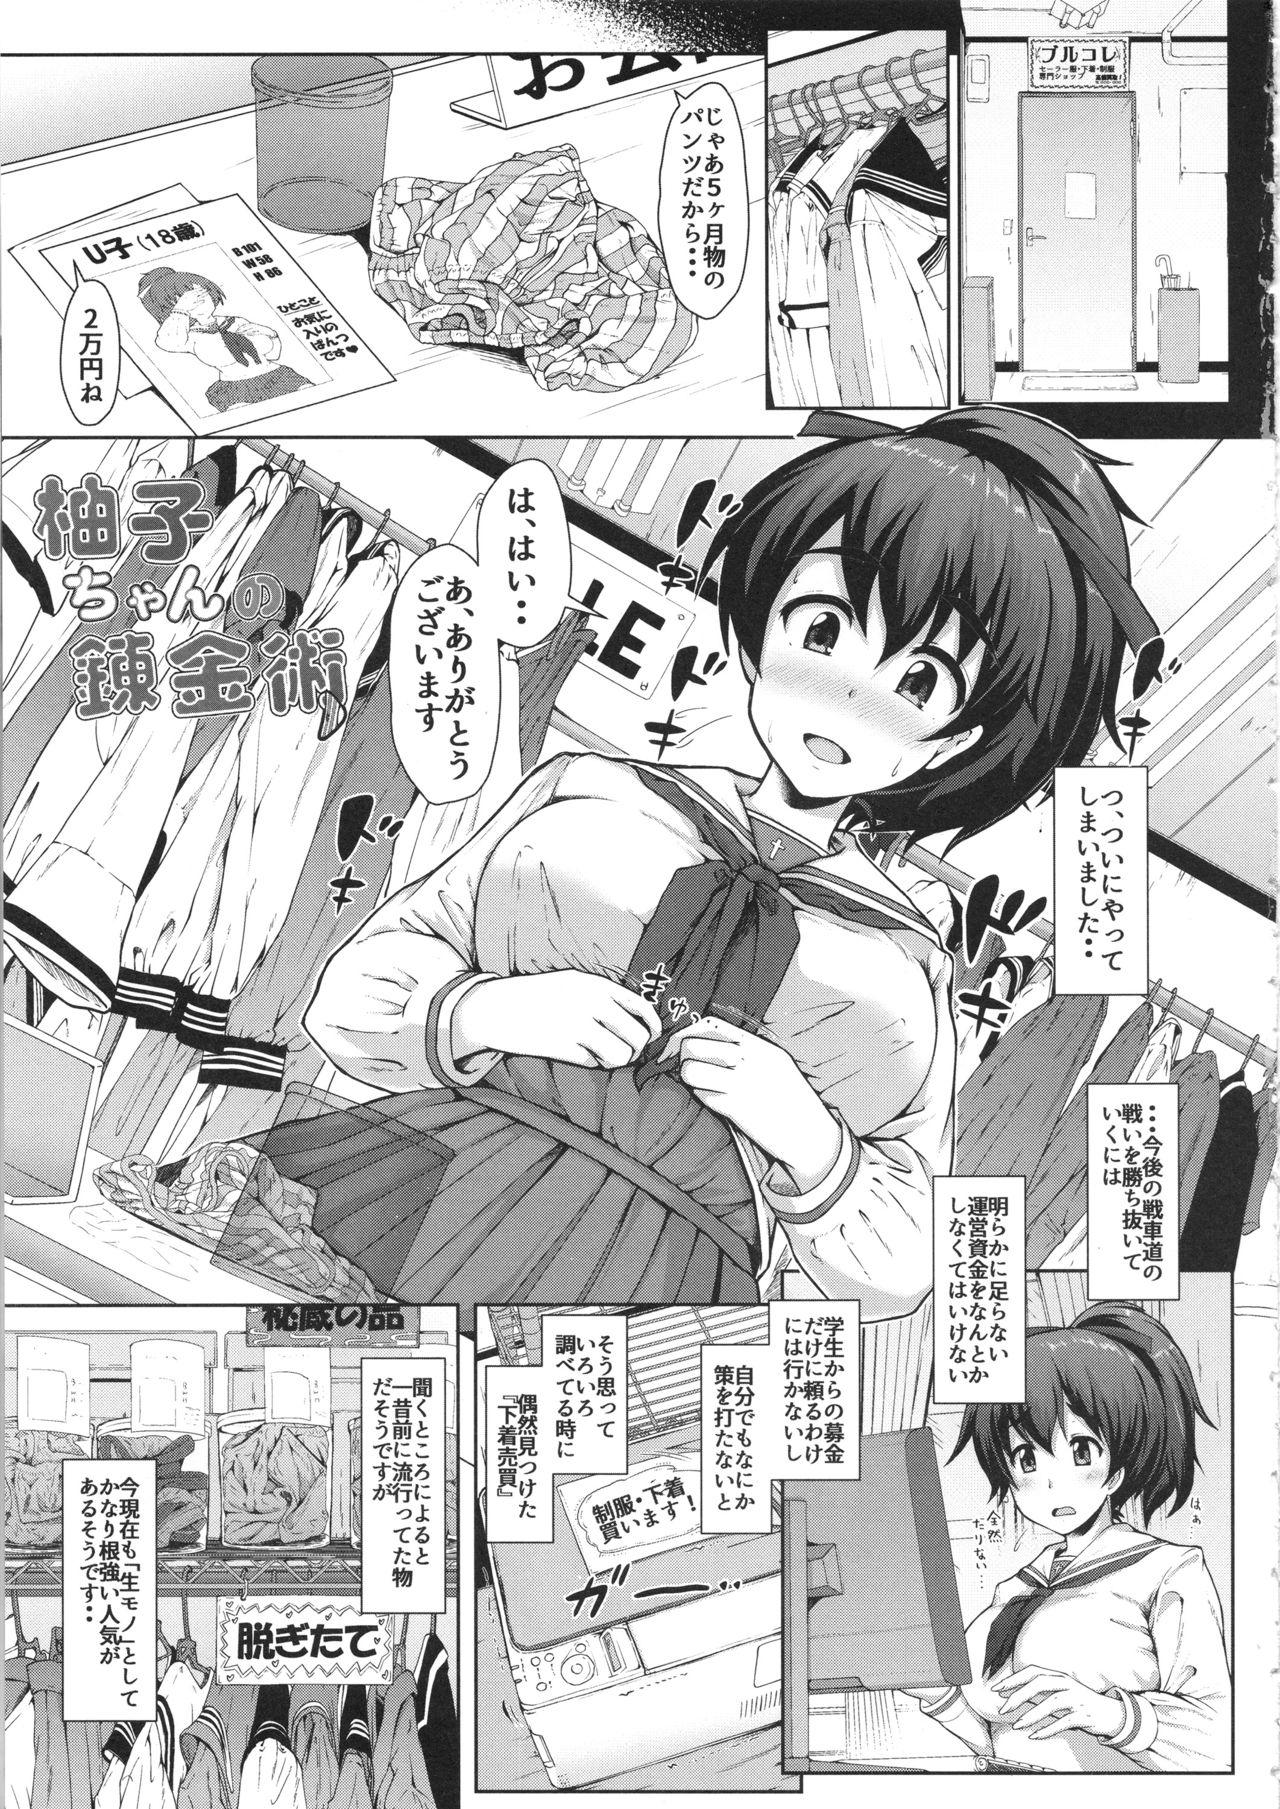 Free Yuzu-chan no Renkinjutsu - Girls und panzer Tats - Page 2